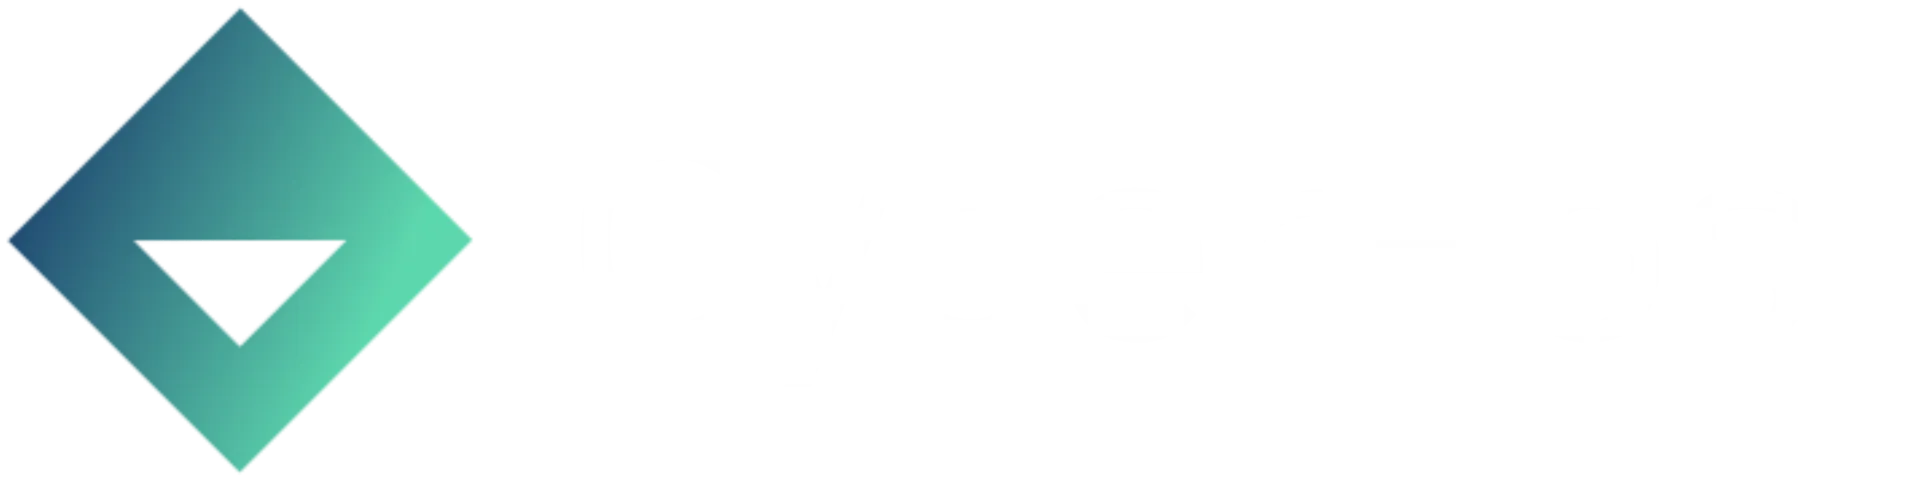 CyberHost